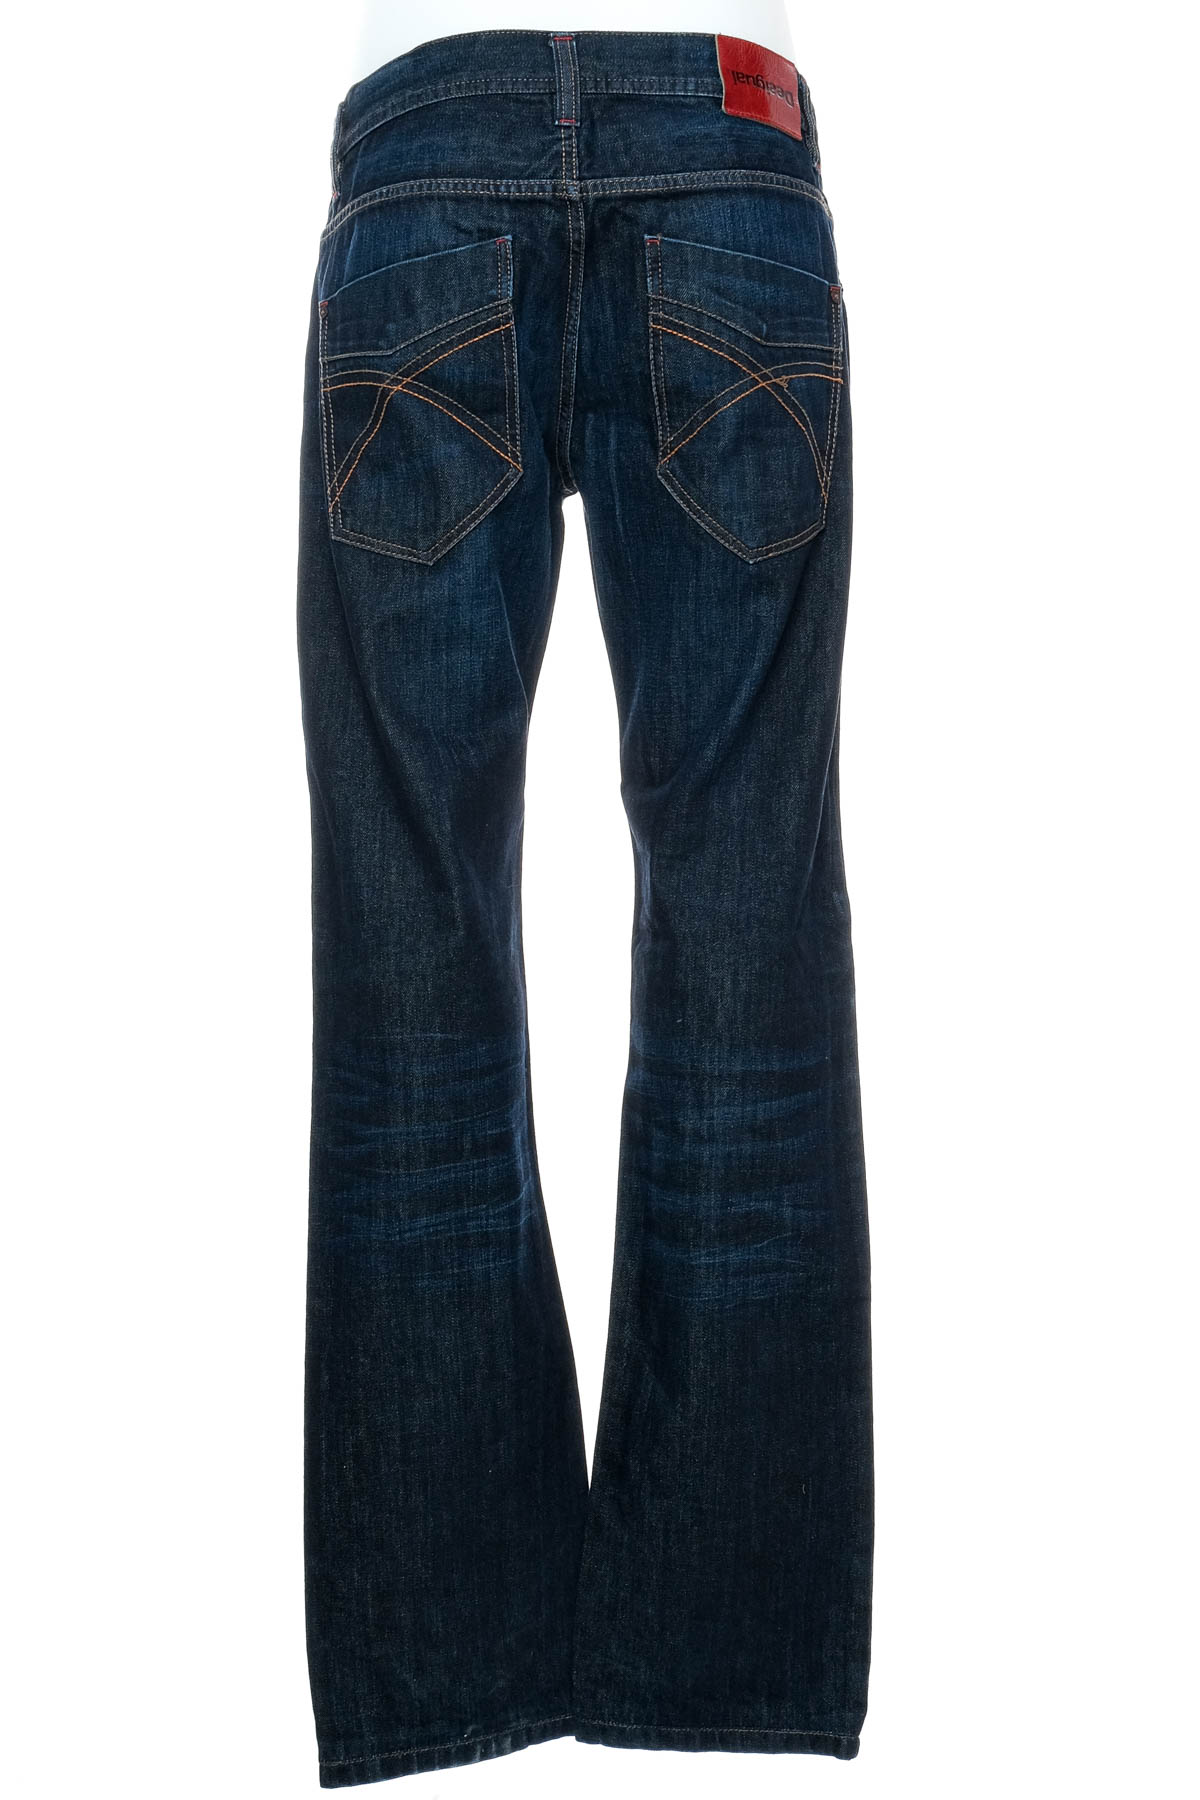 Men's jeans - Desigual - 1